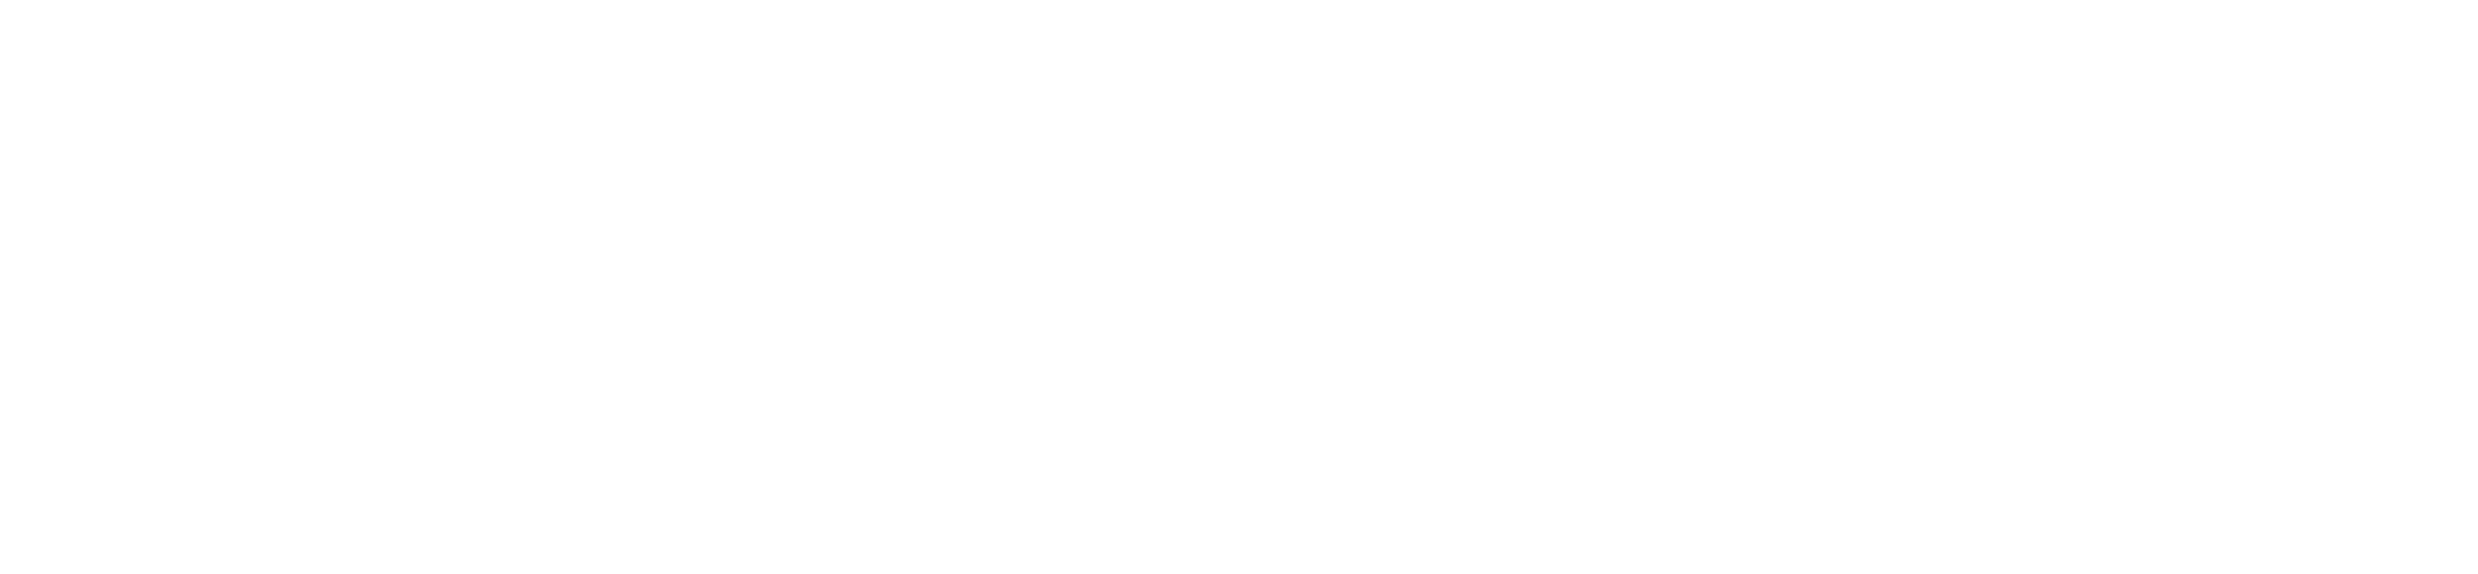 Logo KeyOuest